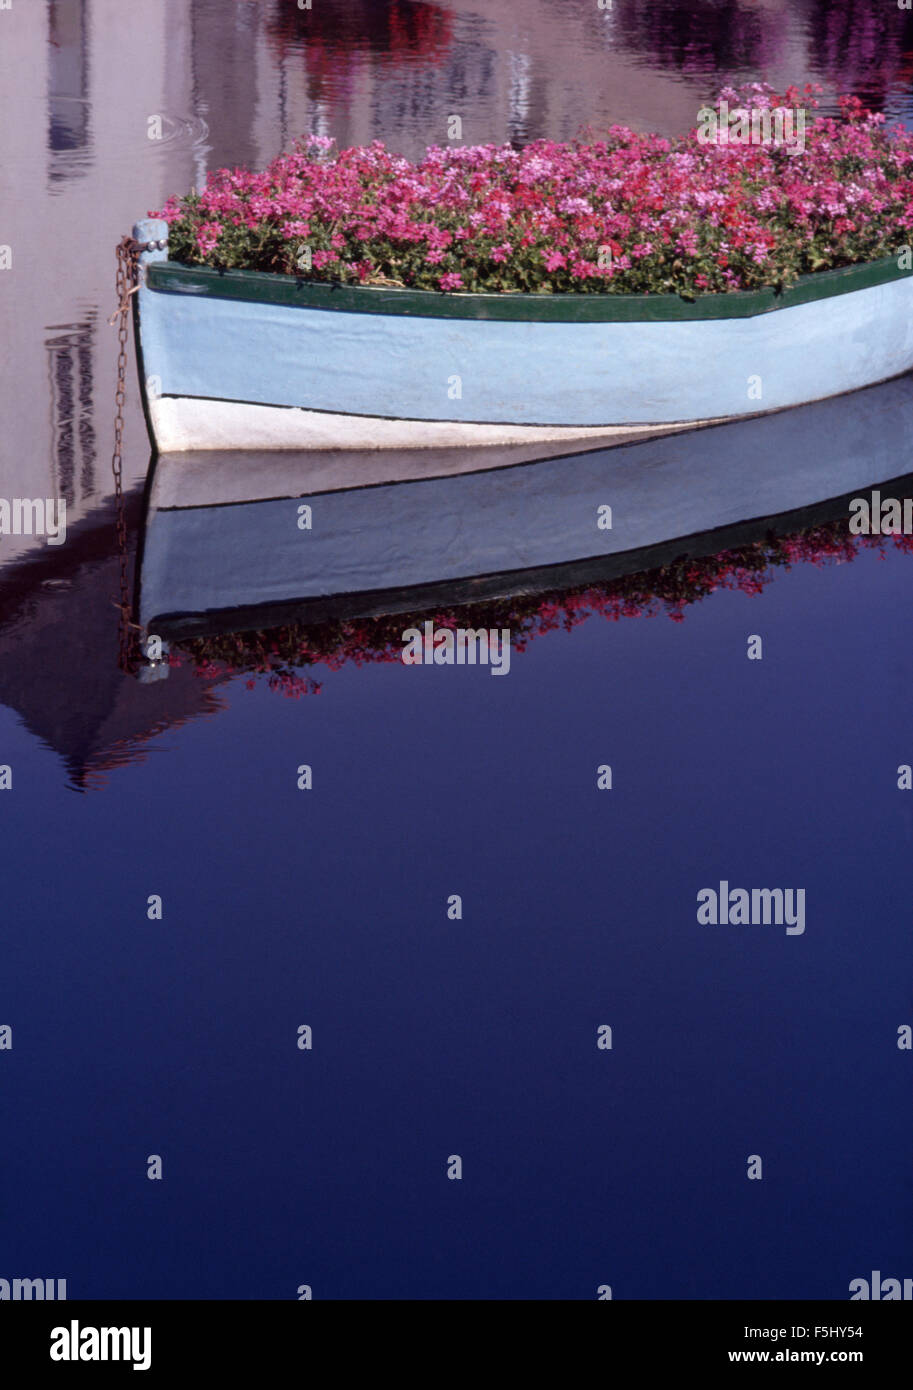 Bateau en bois bleu pâle remplies de géraniums rose sur un canal tranquille à Venise Banque D'Images